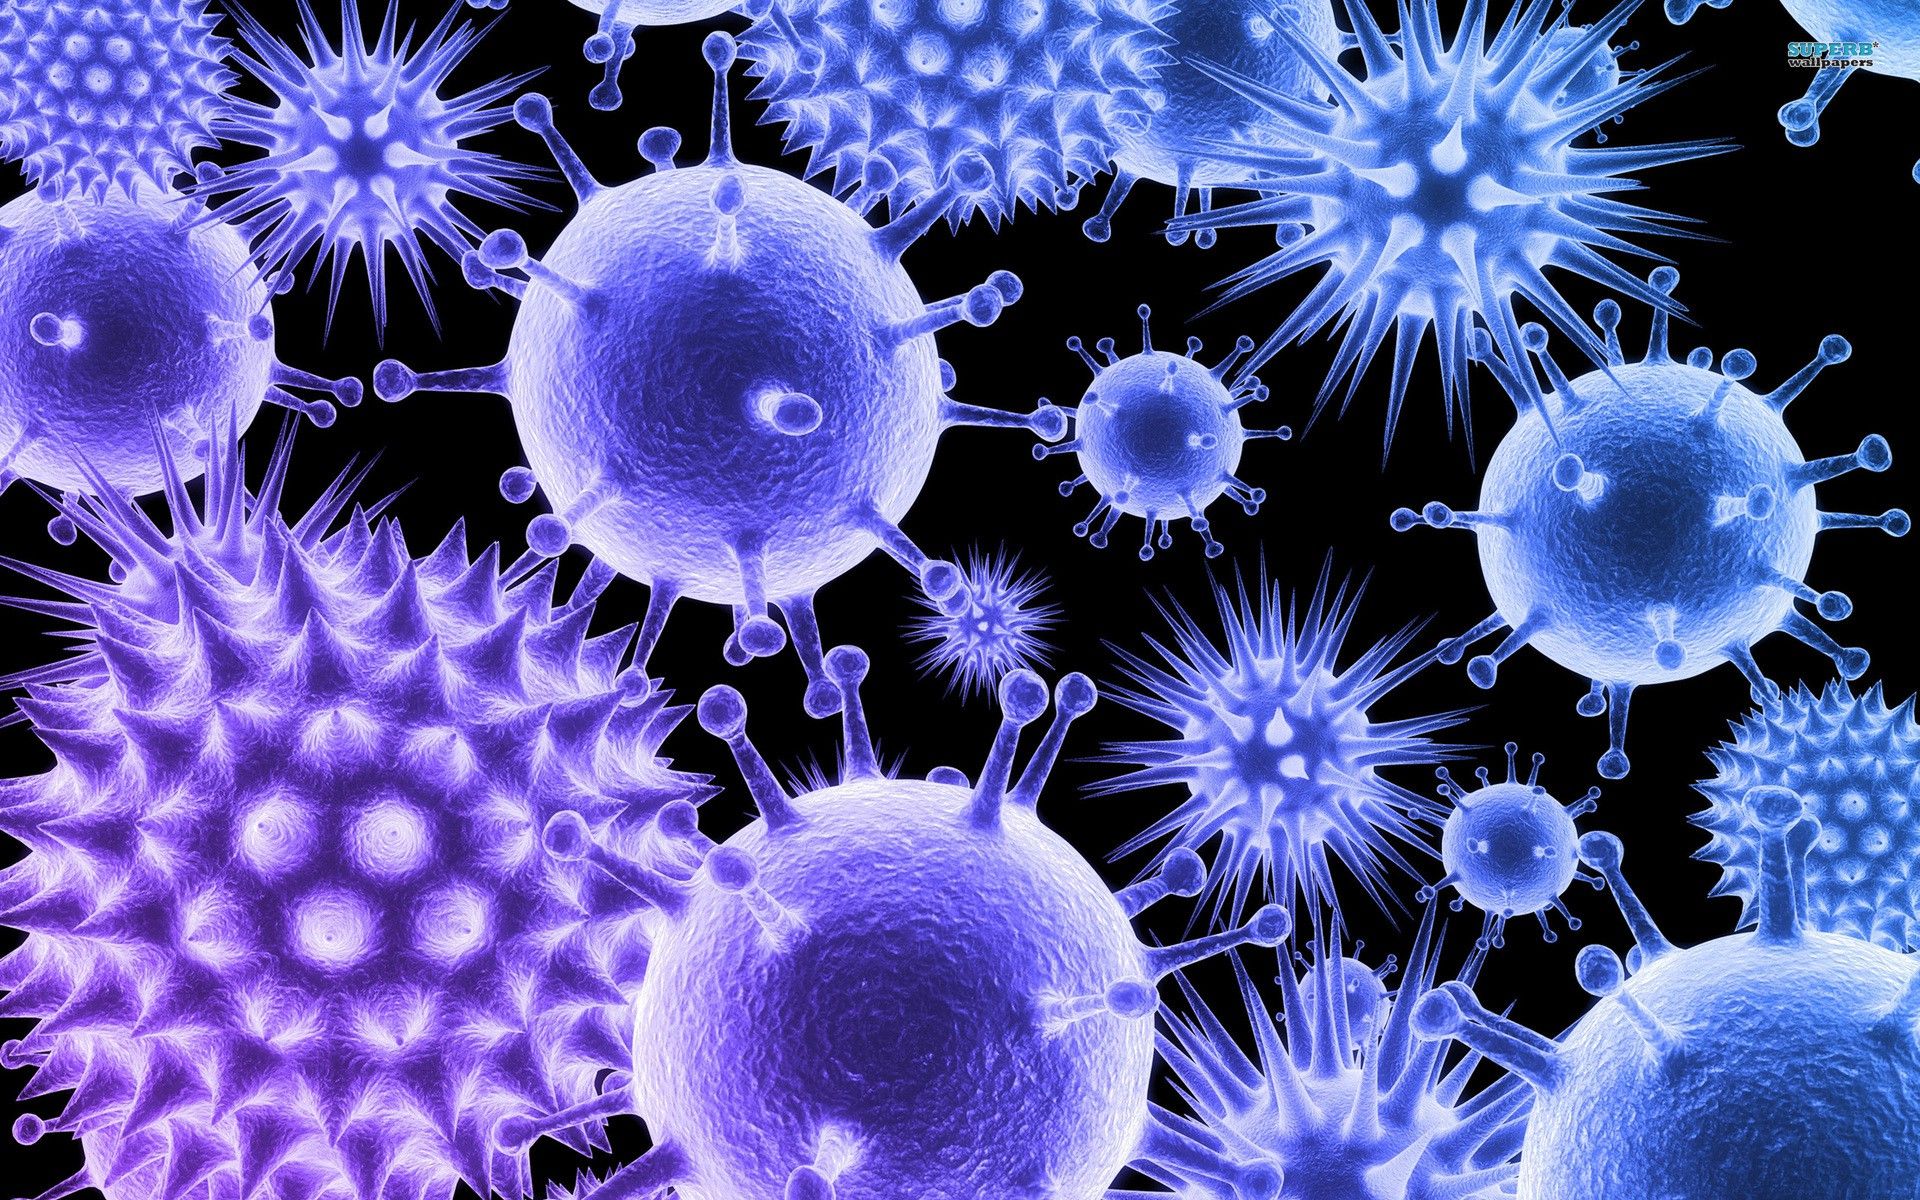 "ЧУЖИЕ" ВНУТРИ НАС: зачем природе нужны эпидемии вирусов?